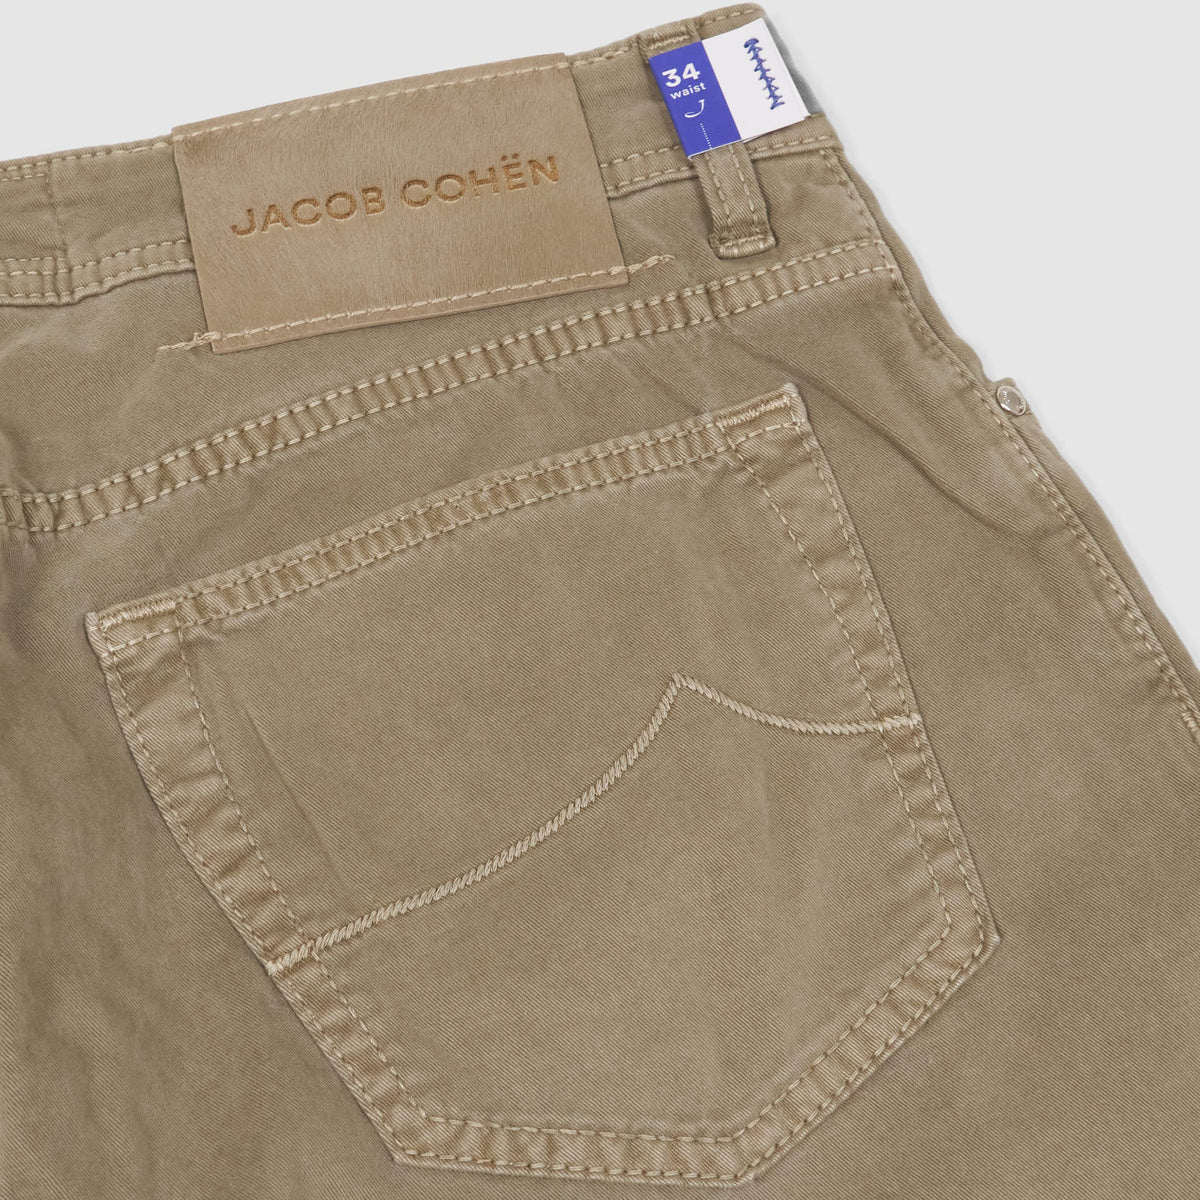 Jacob Cohen Rare Luxury Jeans